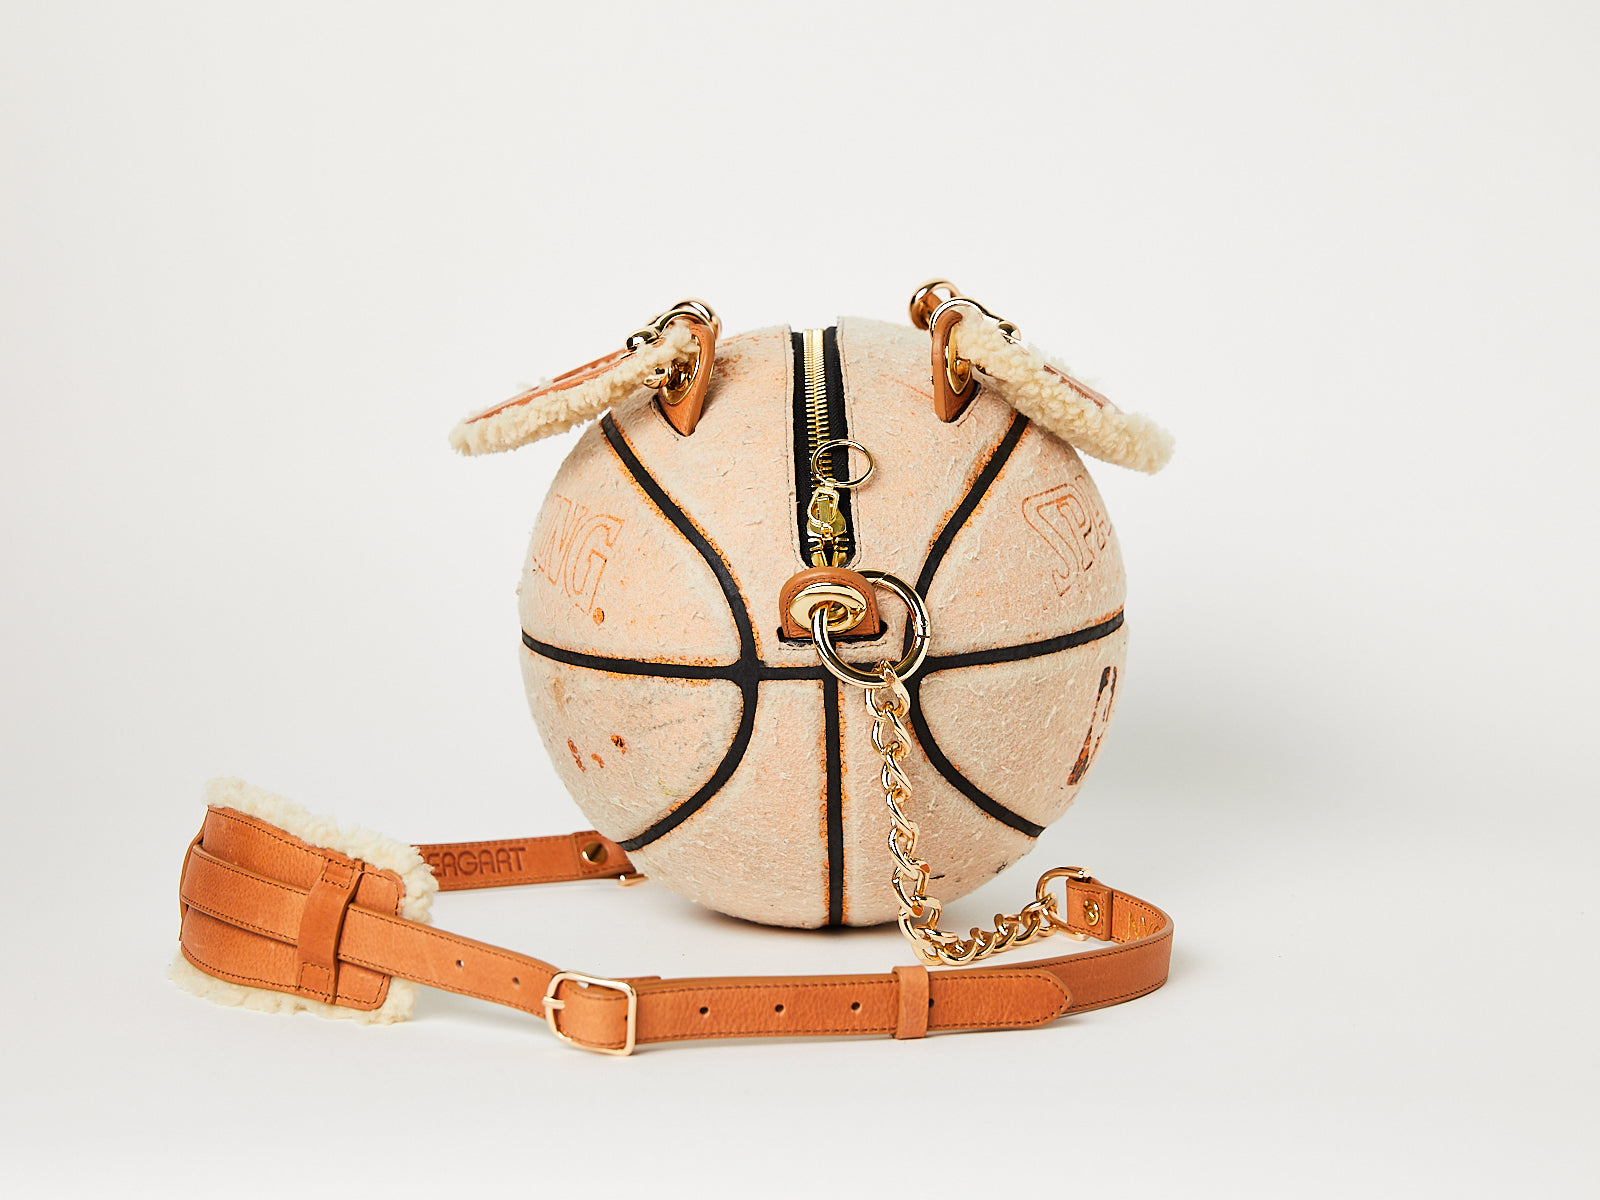 Vintage Nike Basketball Purse – Andrea Bergart Shop